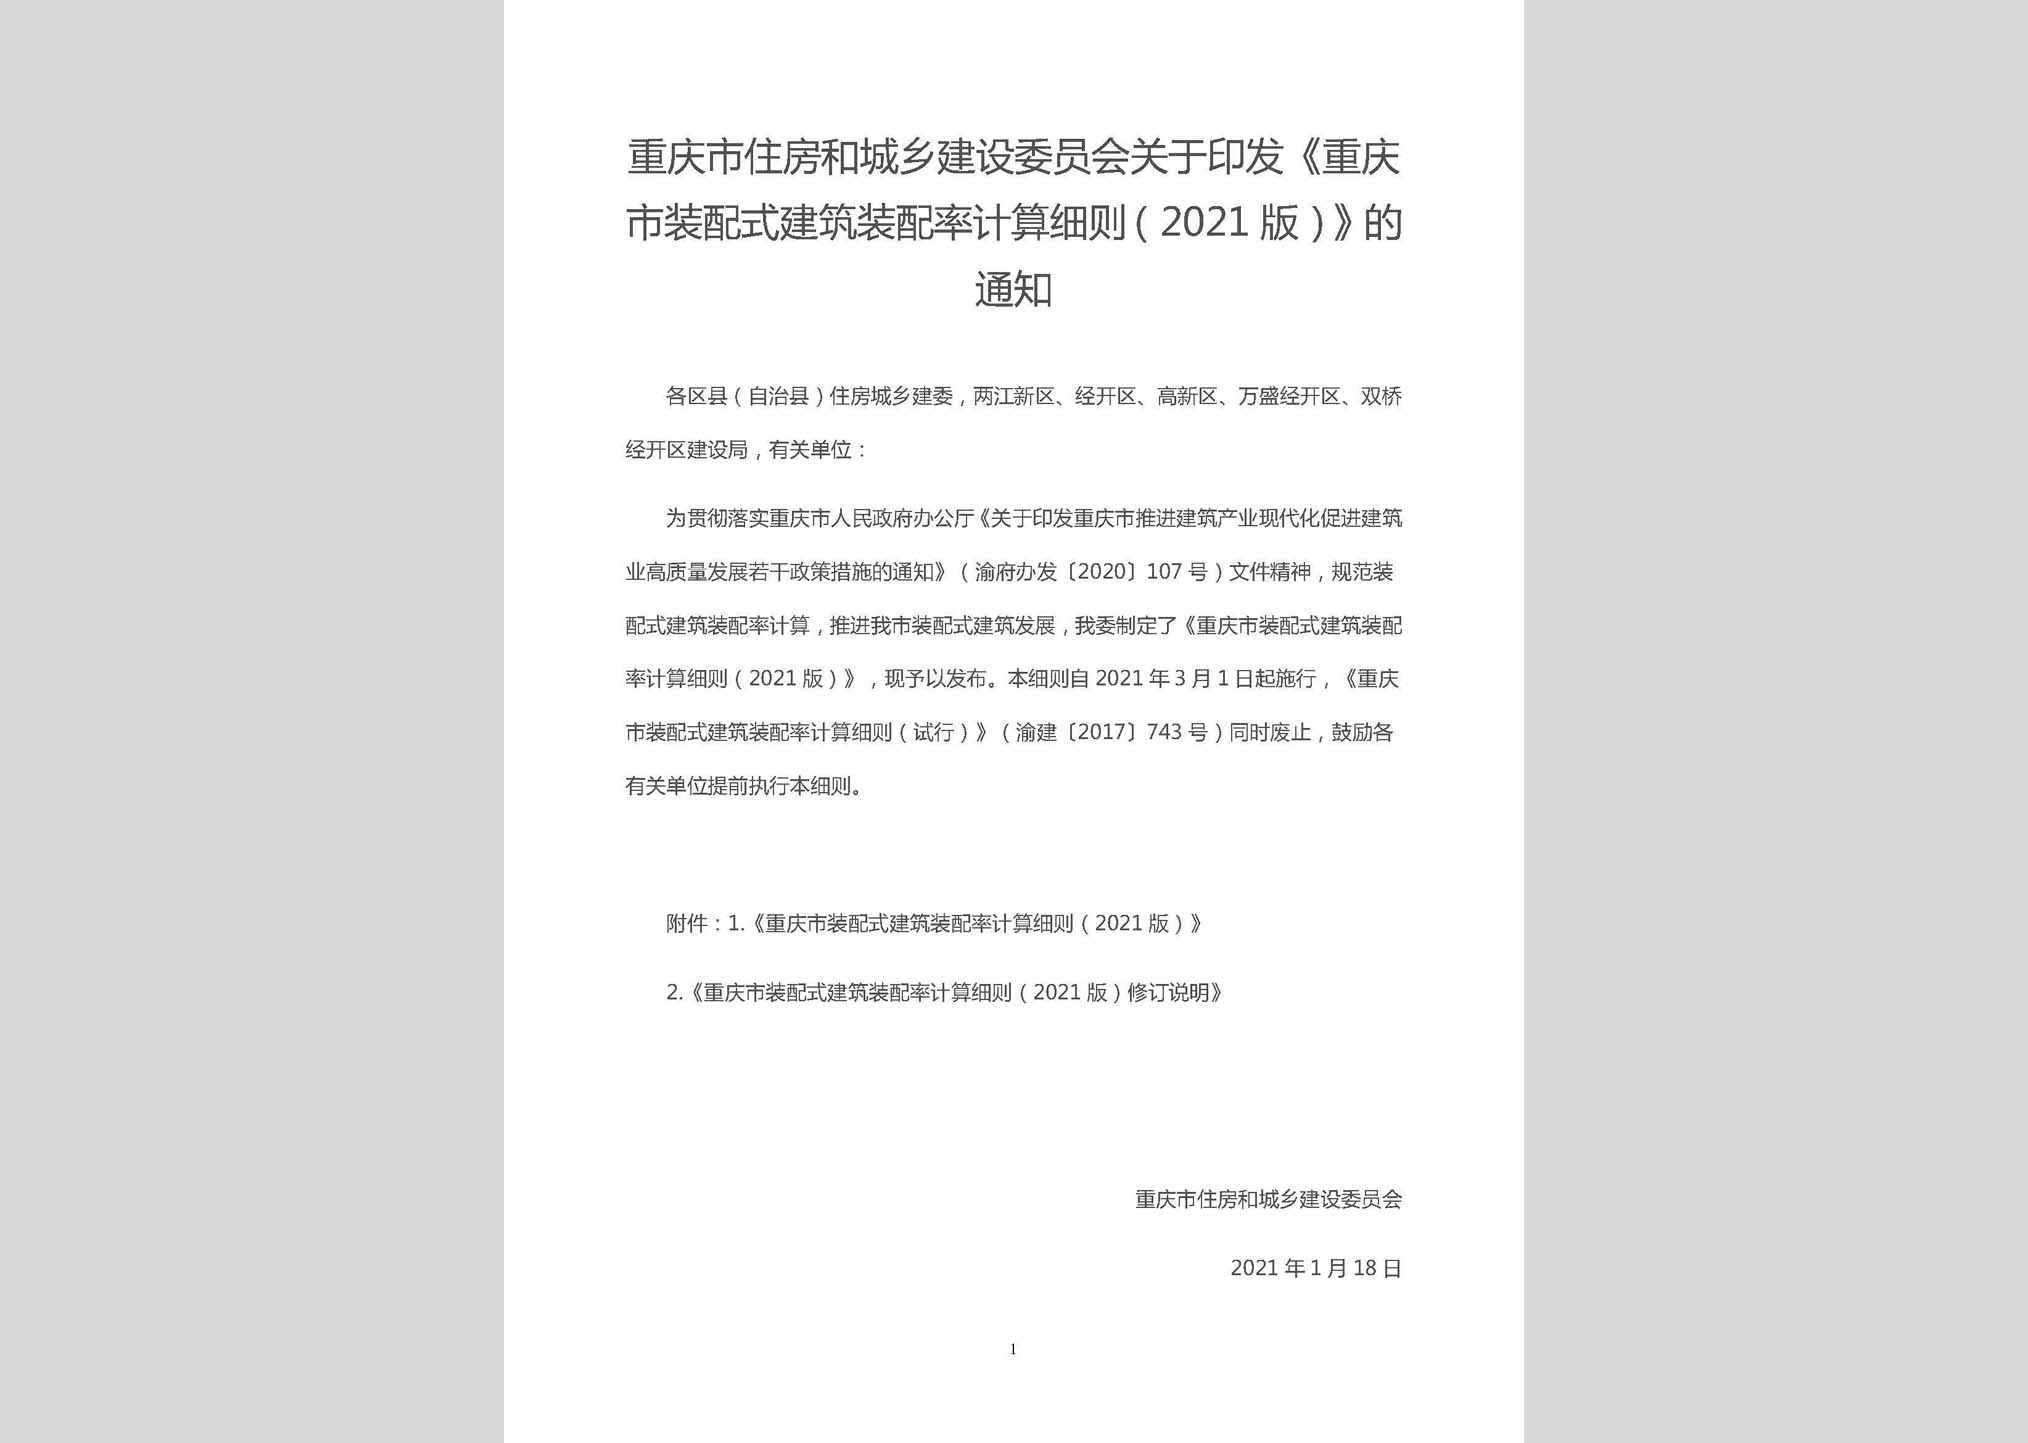 渝建科[2021]4号：关于印发《重庆市装配式建筑装配率计算细则(2021版)》的通知